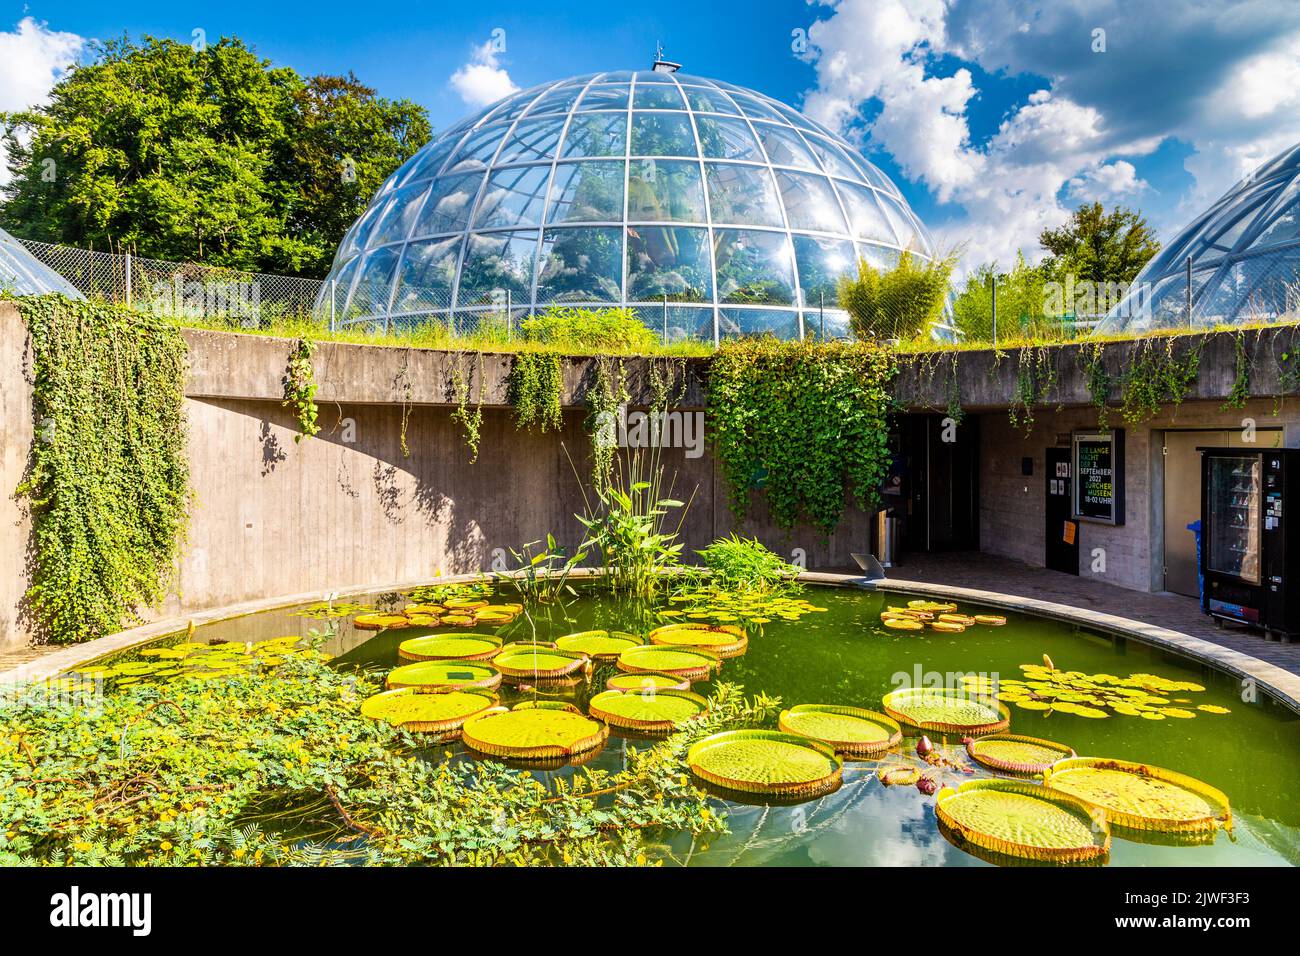 Étang aux nénuphars et dôme d'une serre au jardin botanique de l'Université de Zurich, Zurich, Suisse Banque D'Images